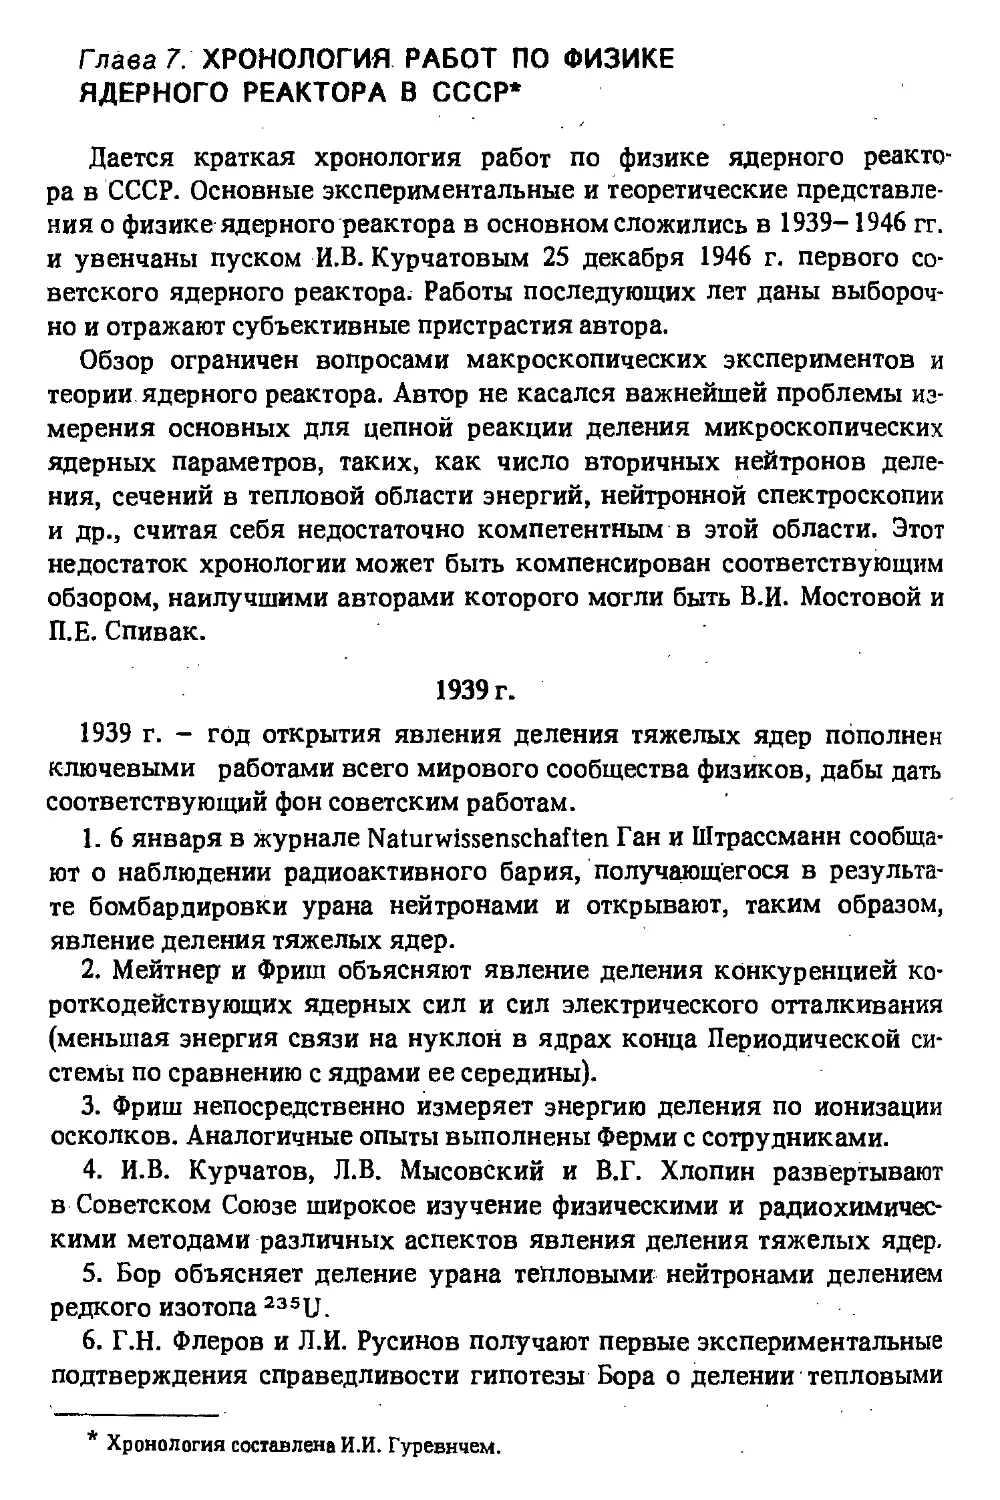 Глава 7. Xpoнoлoгия работ по физике ядерного реактора в СССР